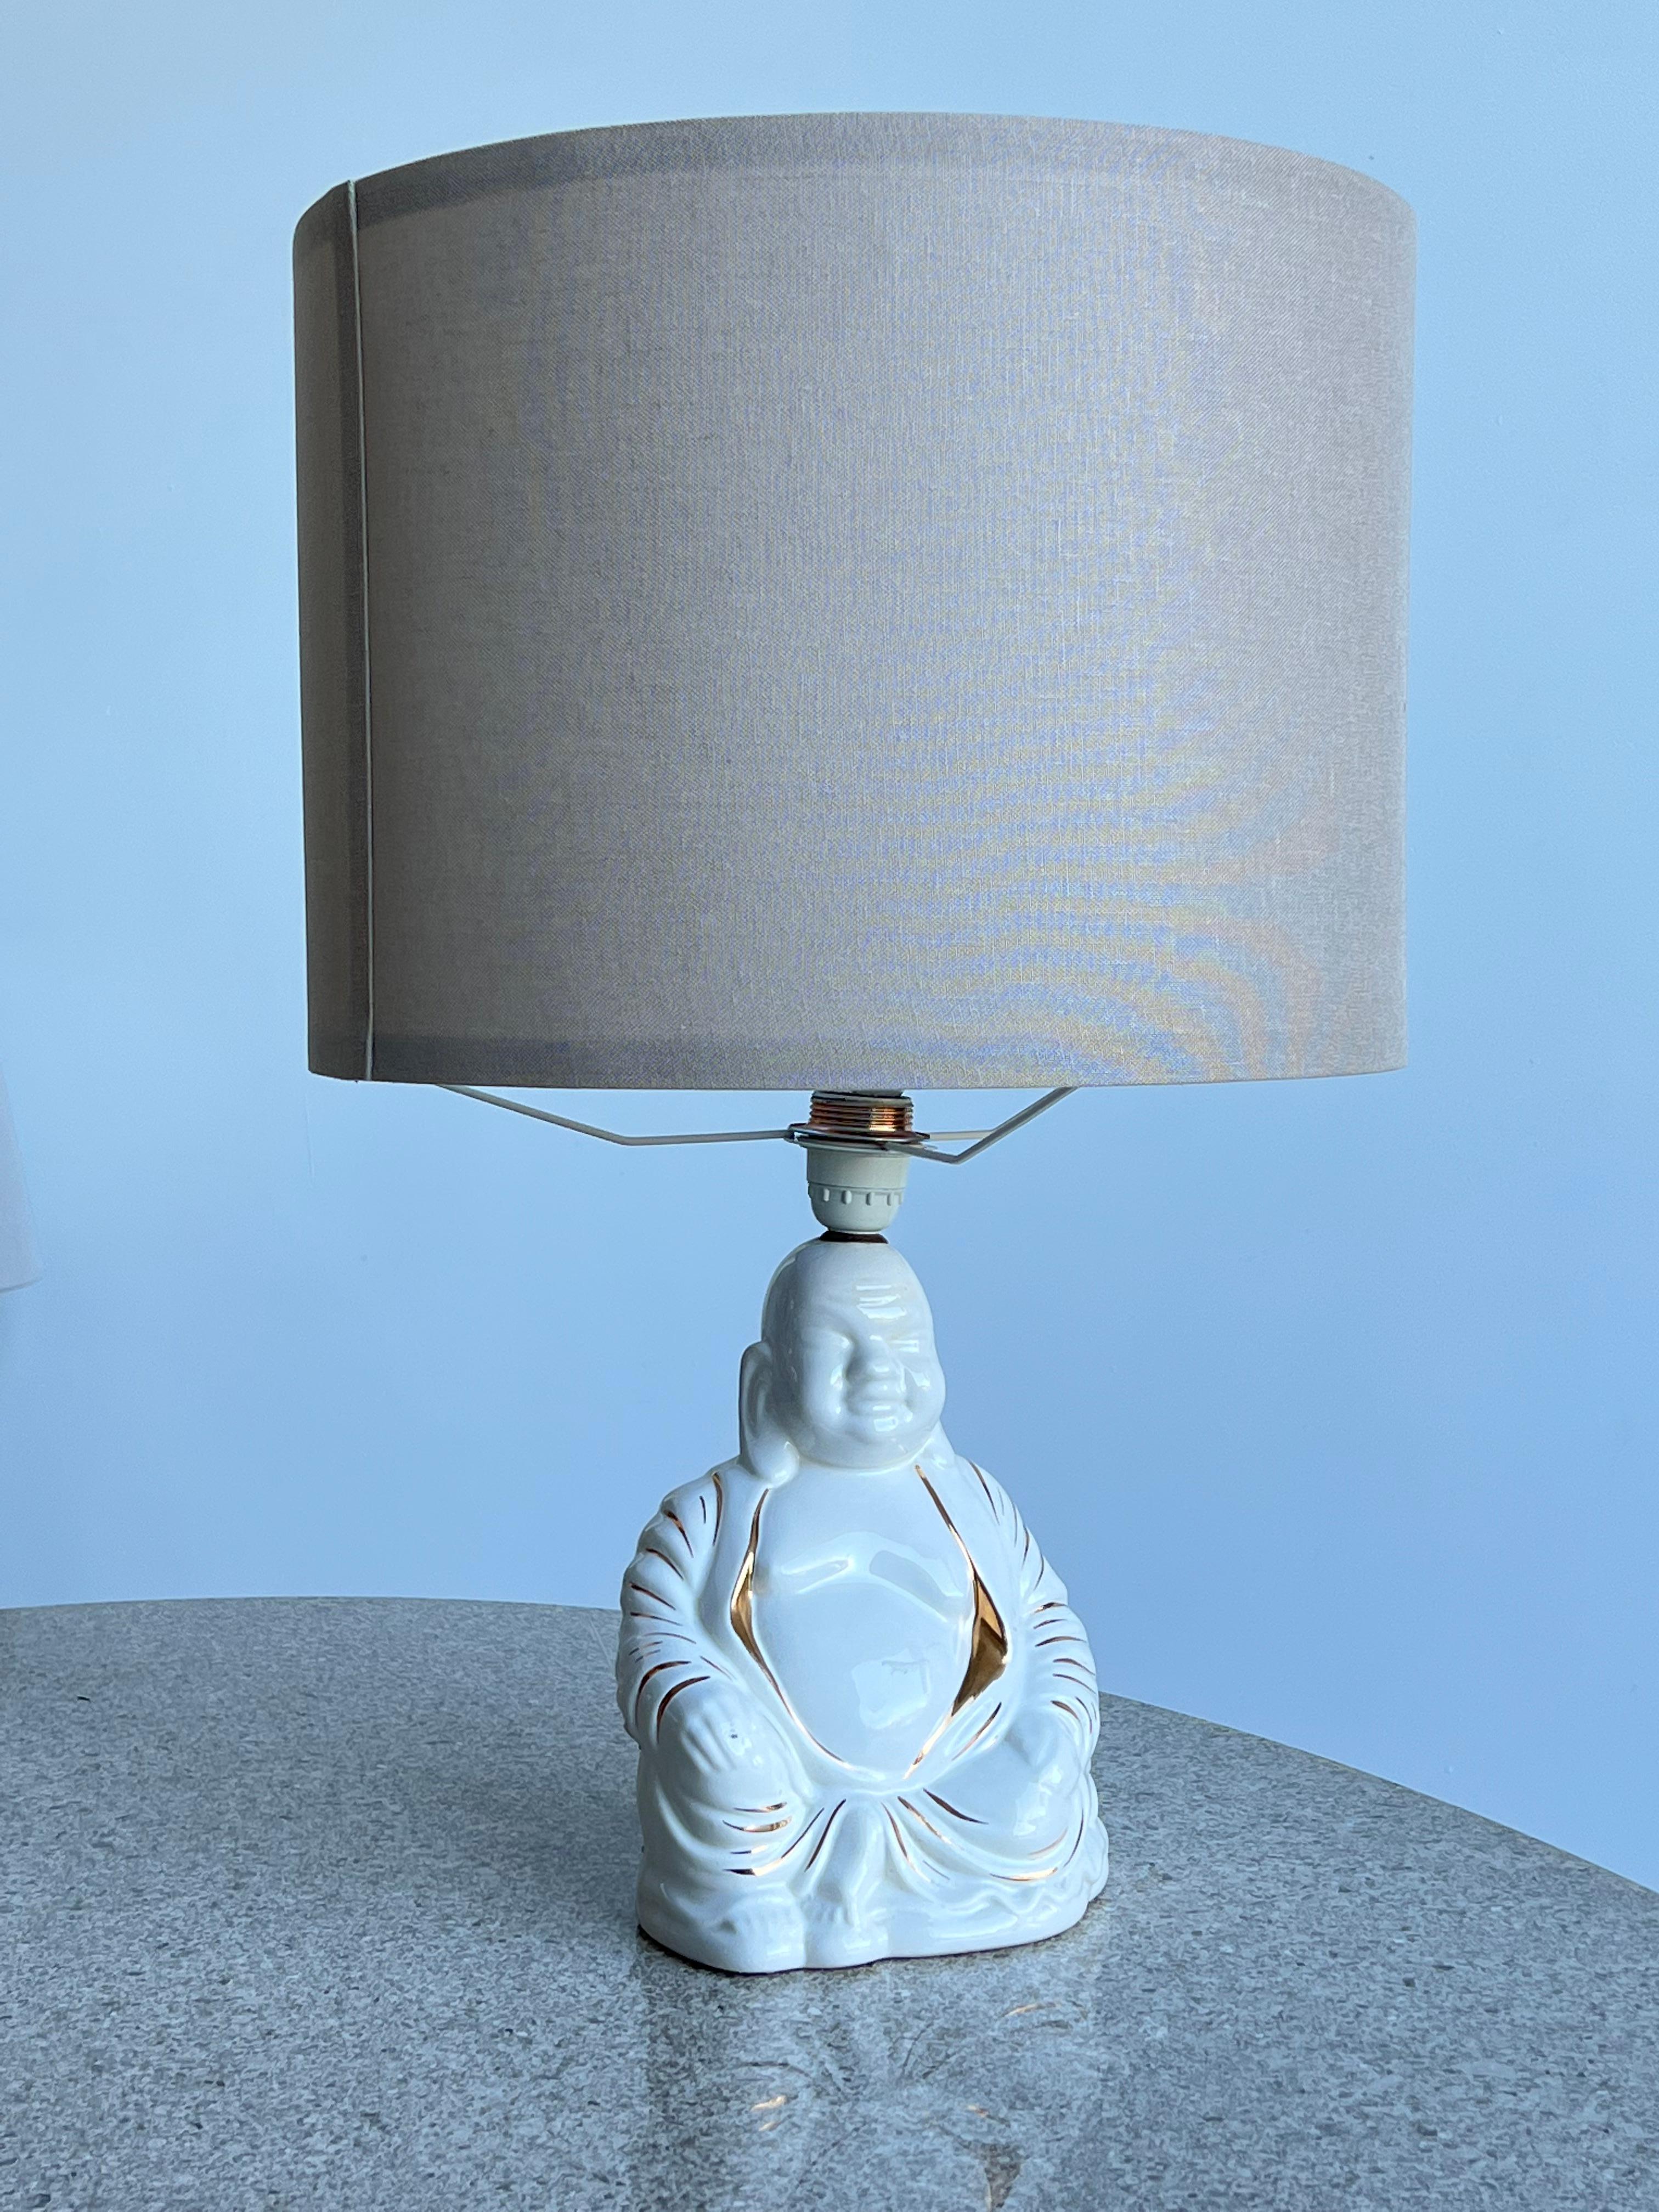 Italienische Tischlampe aus der Mitte des Jahrhunderts aus handbemaltem Porzellan in Form eines Buddhas, 1960er Jahre.
Buddha-Lampe aus handbemaltem Porzellan, der Schirm ist durch einen hellen, runden Schirm ersetzt worden.
Komplett neu verkabelt